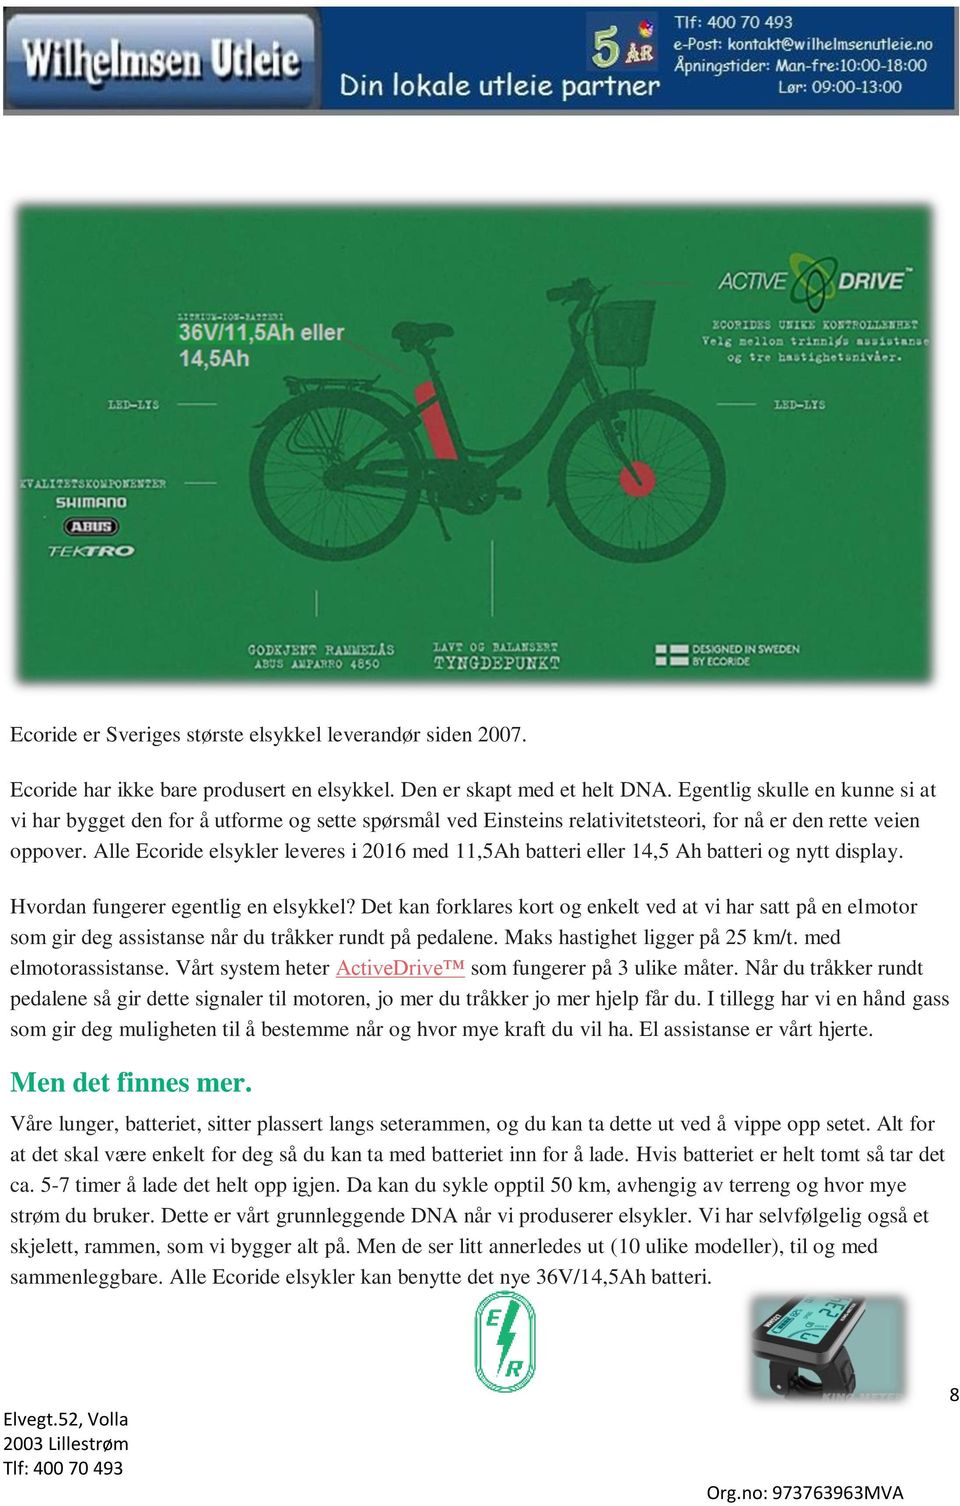 Alle Ecoride elsykler leveres i 2016 med 11,5Ah batteri eller 14,5 Ah batteri og nytt display. Hvordan fungerer egentlig en elsykkel?